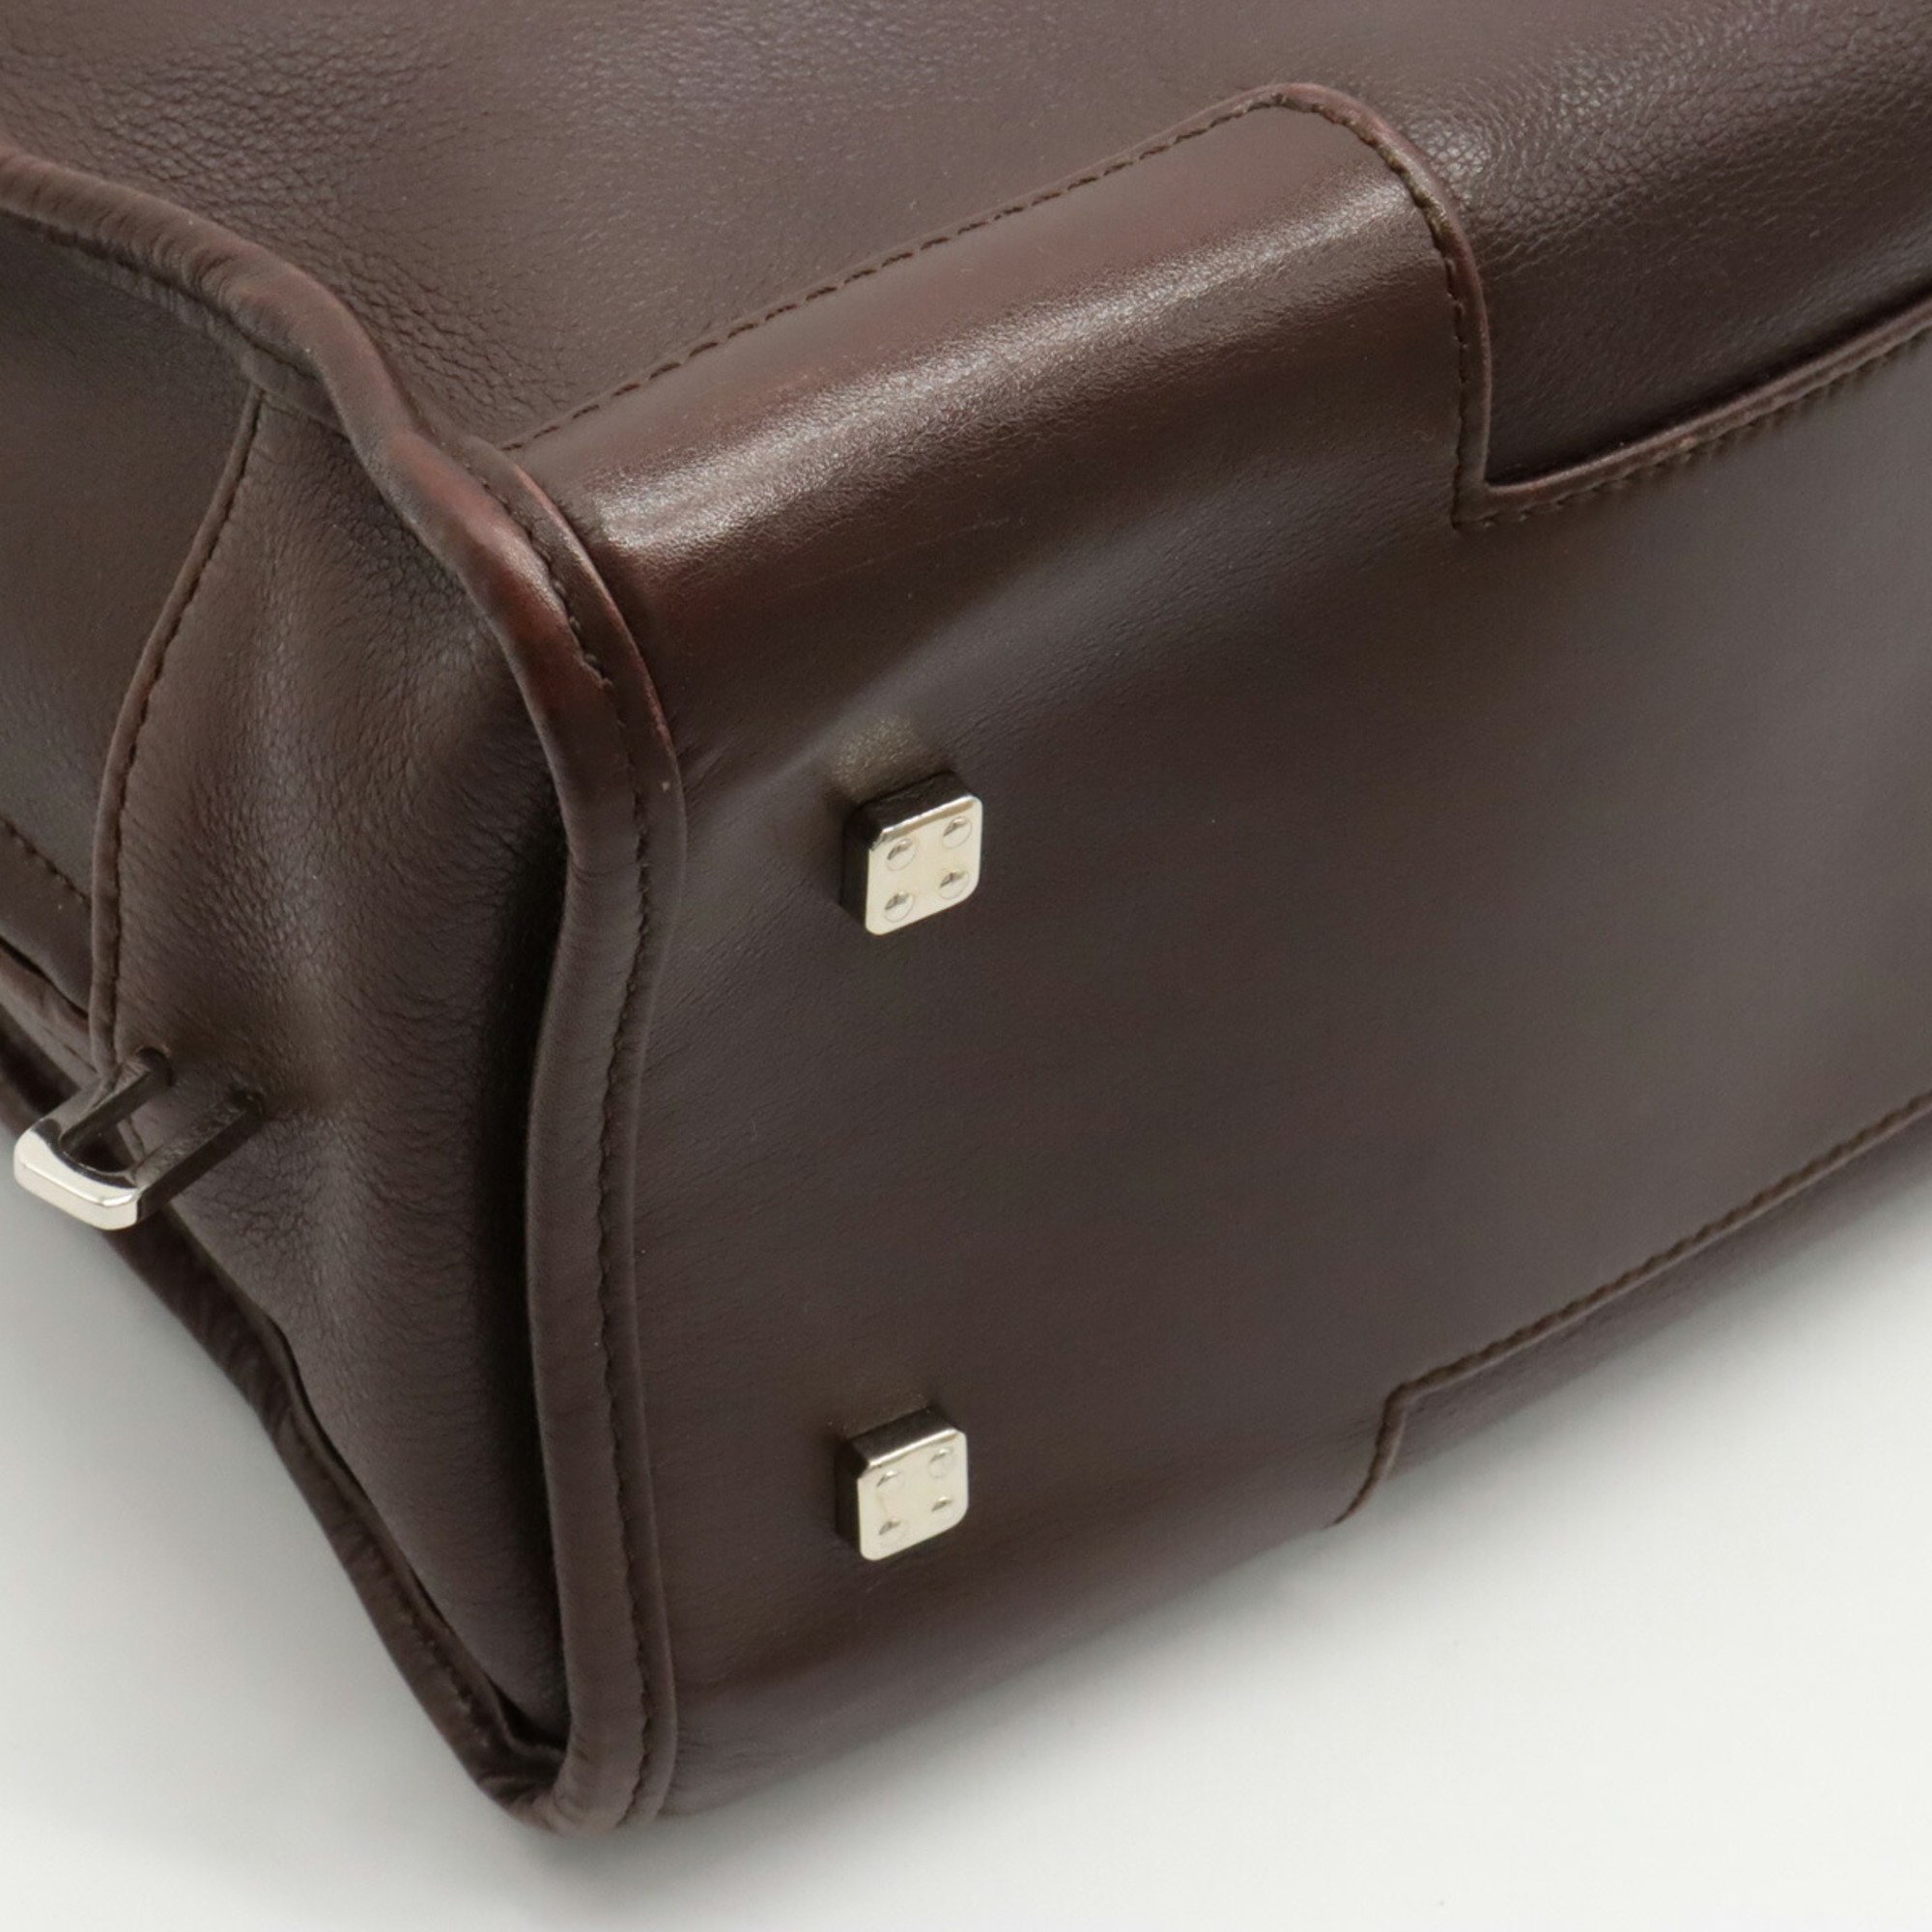 LOEWE Amazona 28 Anagram Handbag Boston Leather Brown 311.62.001